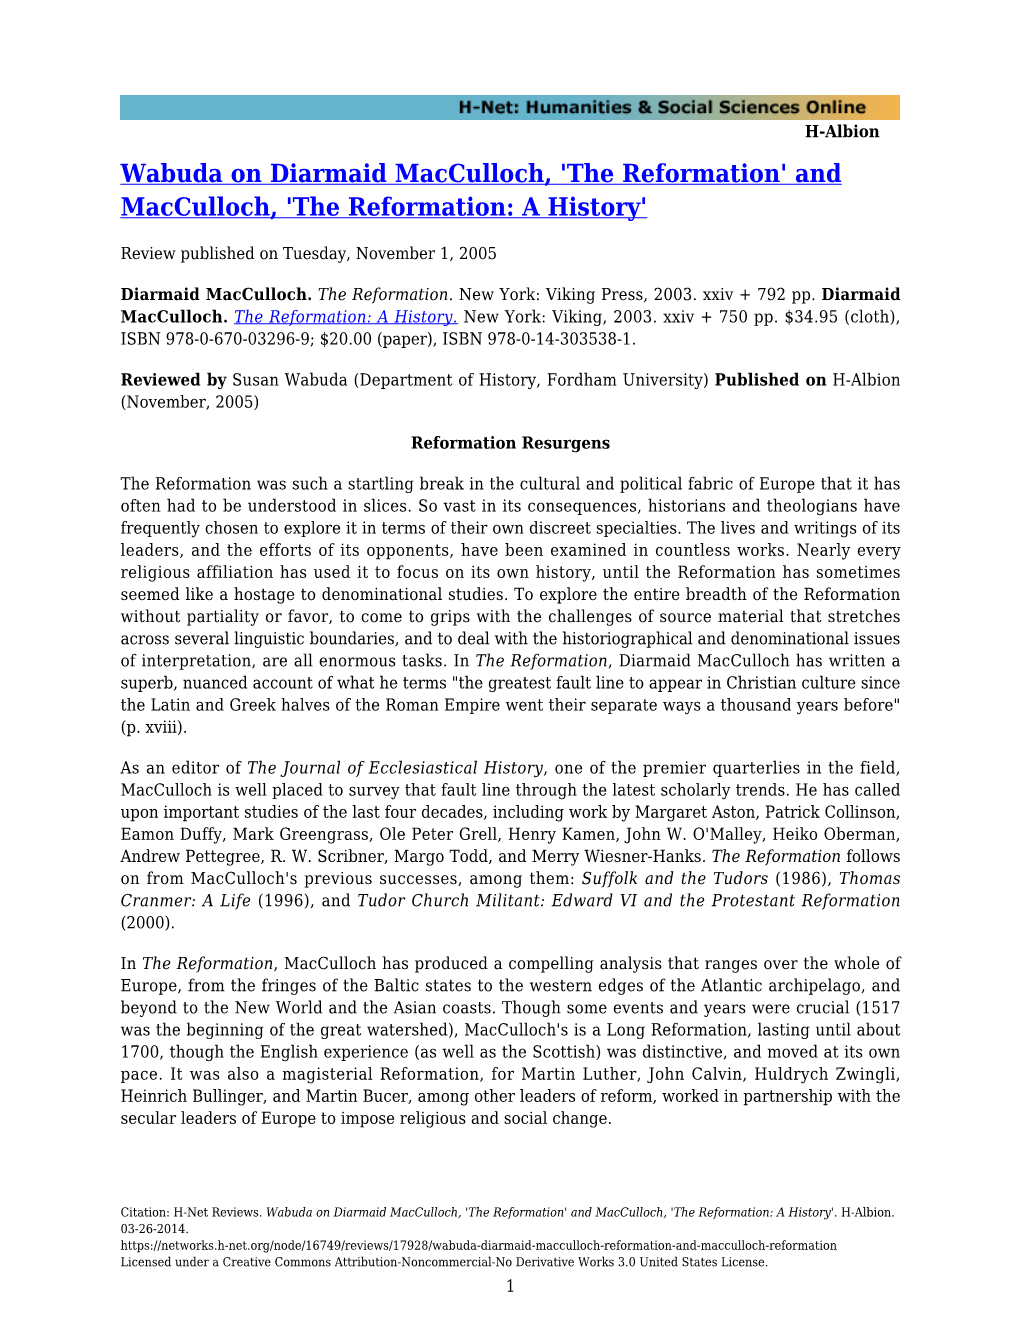 Wabuda on Diarmaid Macculloch, 'The Reformation' and Macculloch, 'The Reformation: a History'